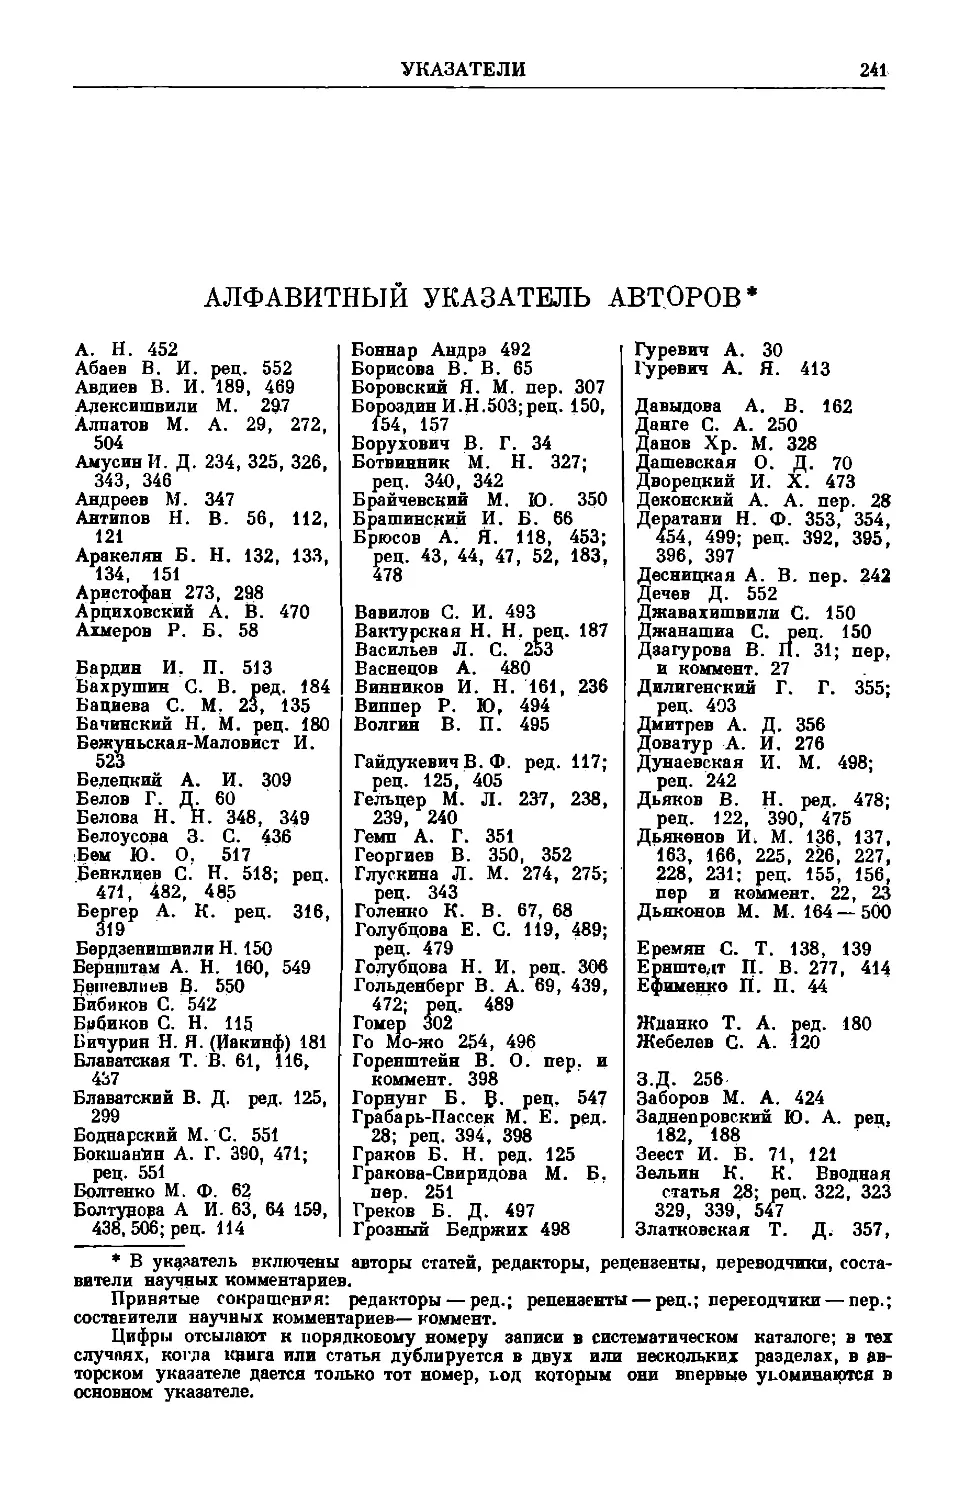 Алфавитный указатель авторов ВДИ за 1951—1955 гг.